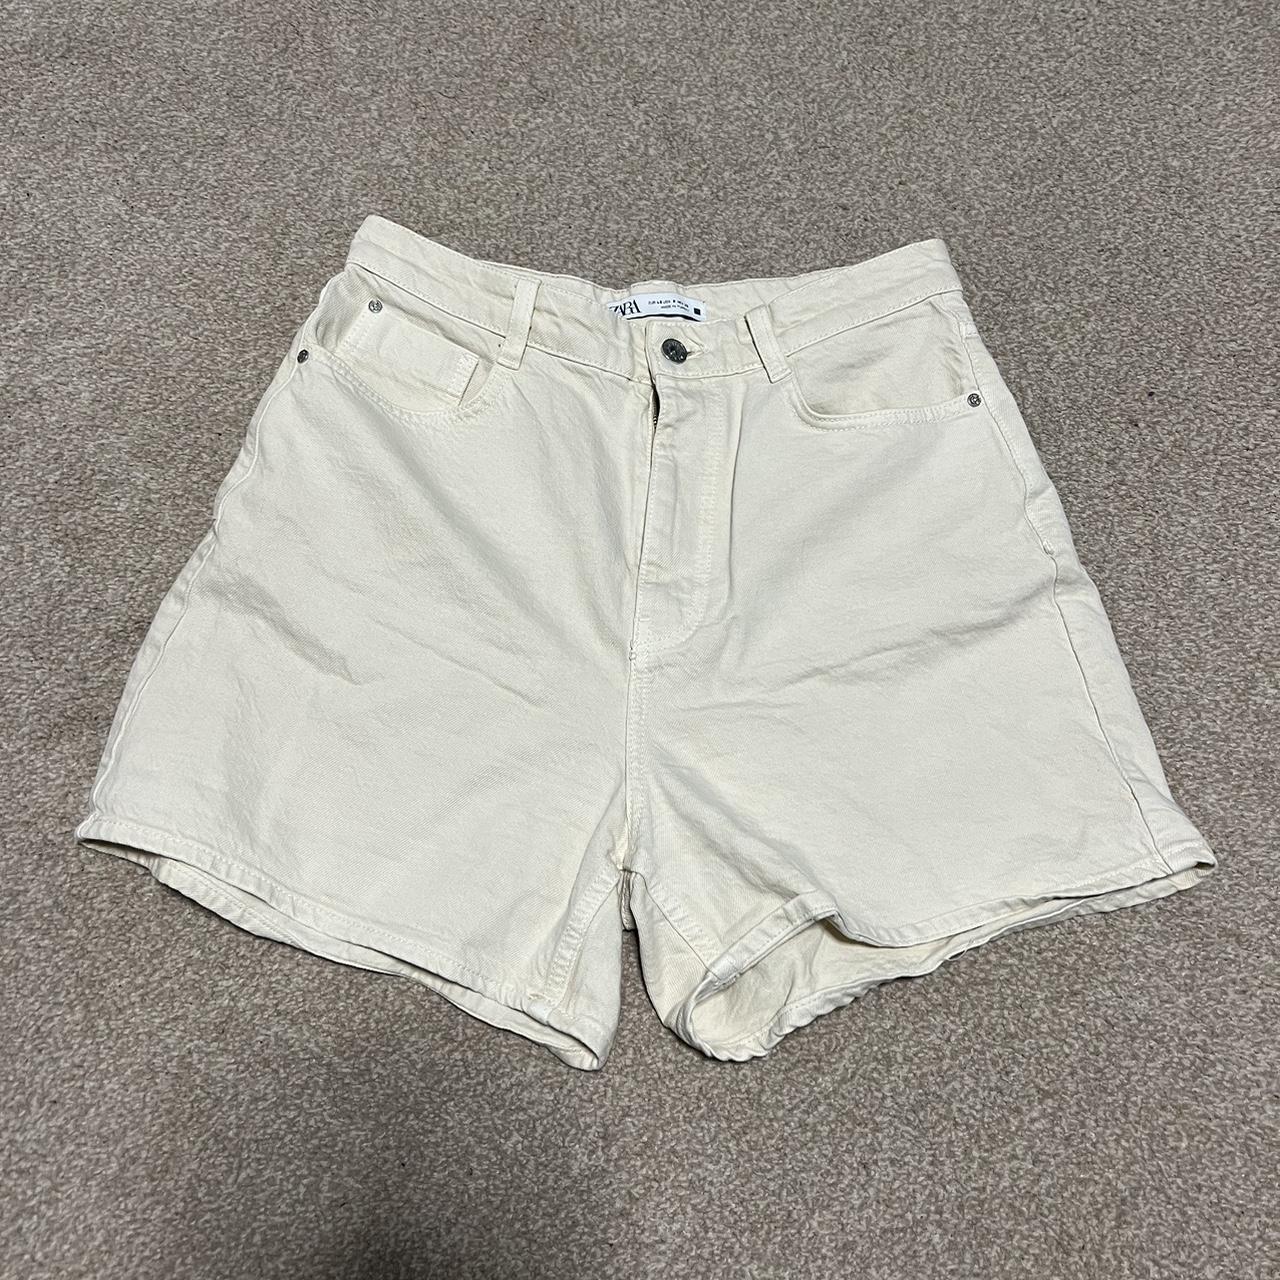 Zara cream/beige high waisted denim jean shorts Worn... - Depop